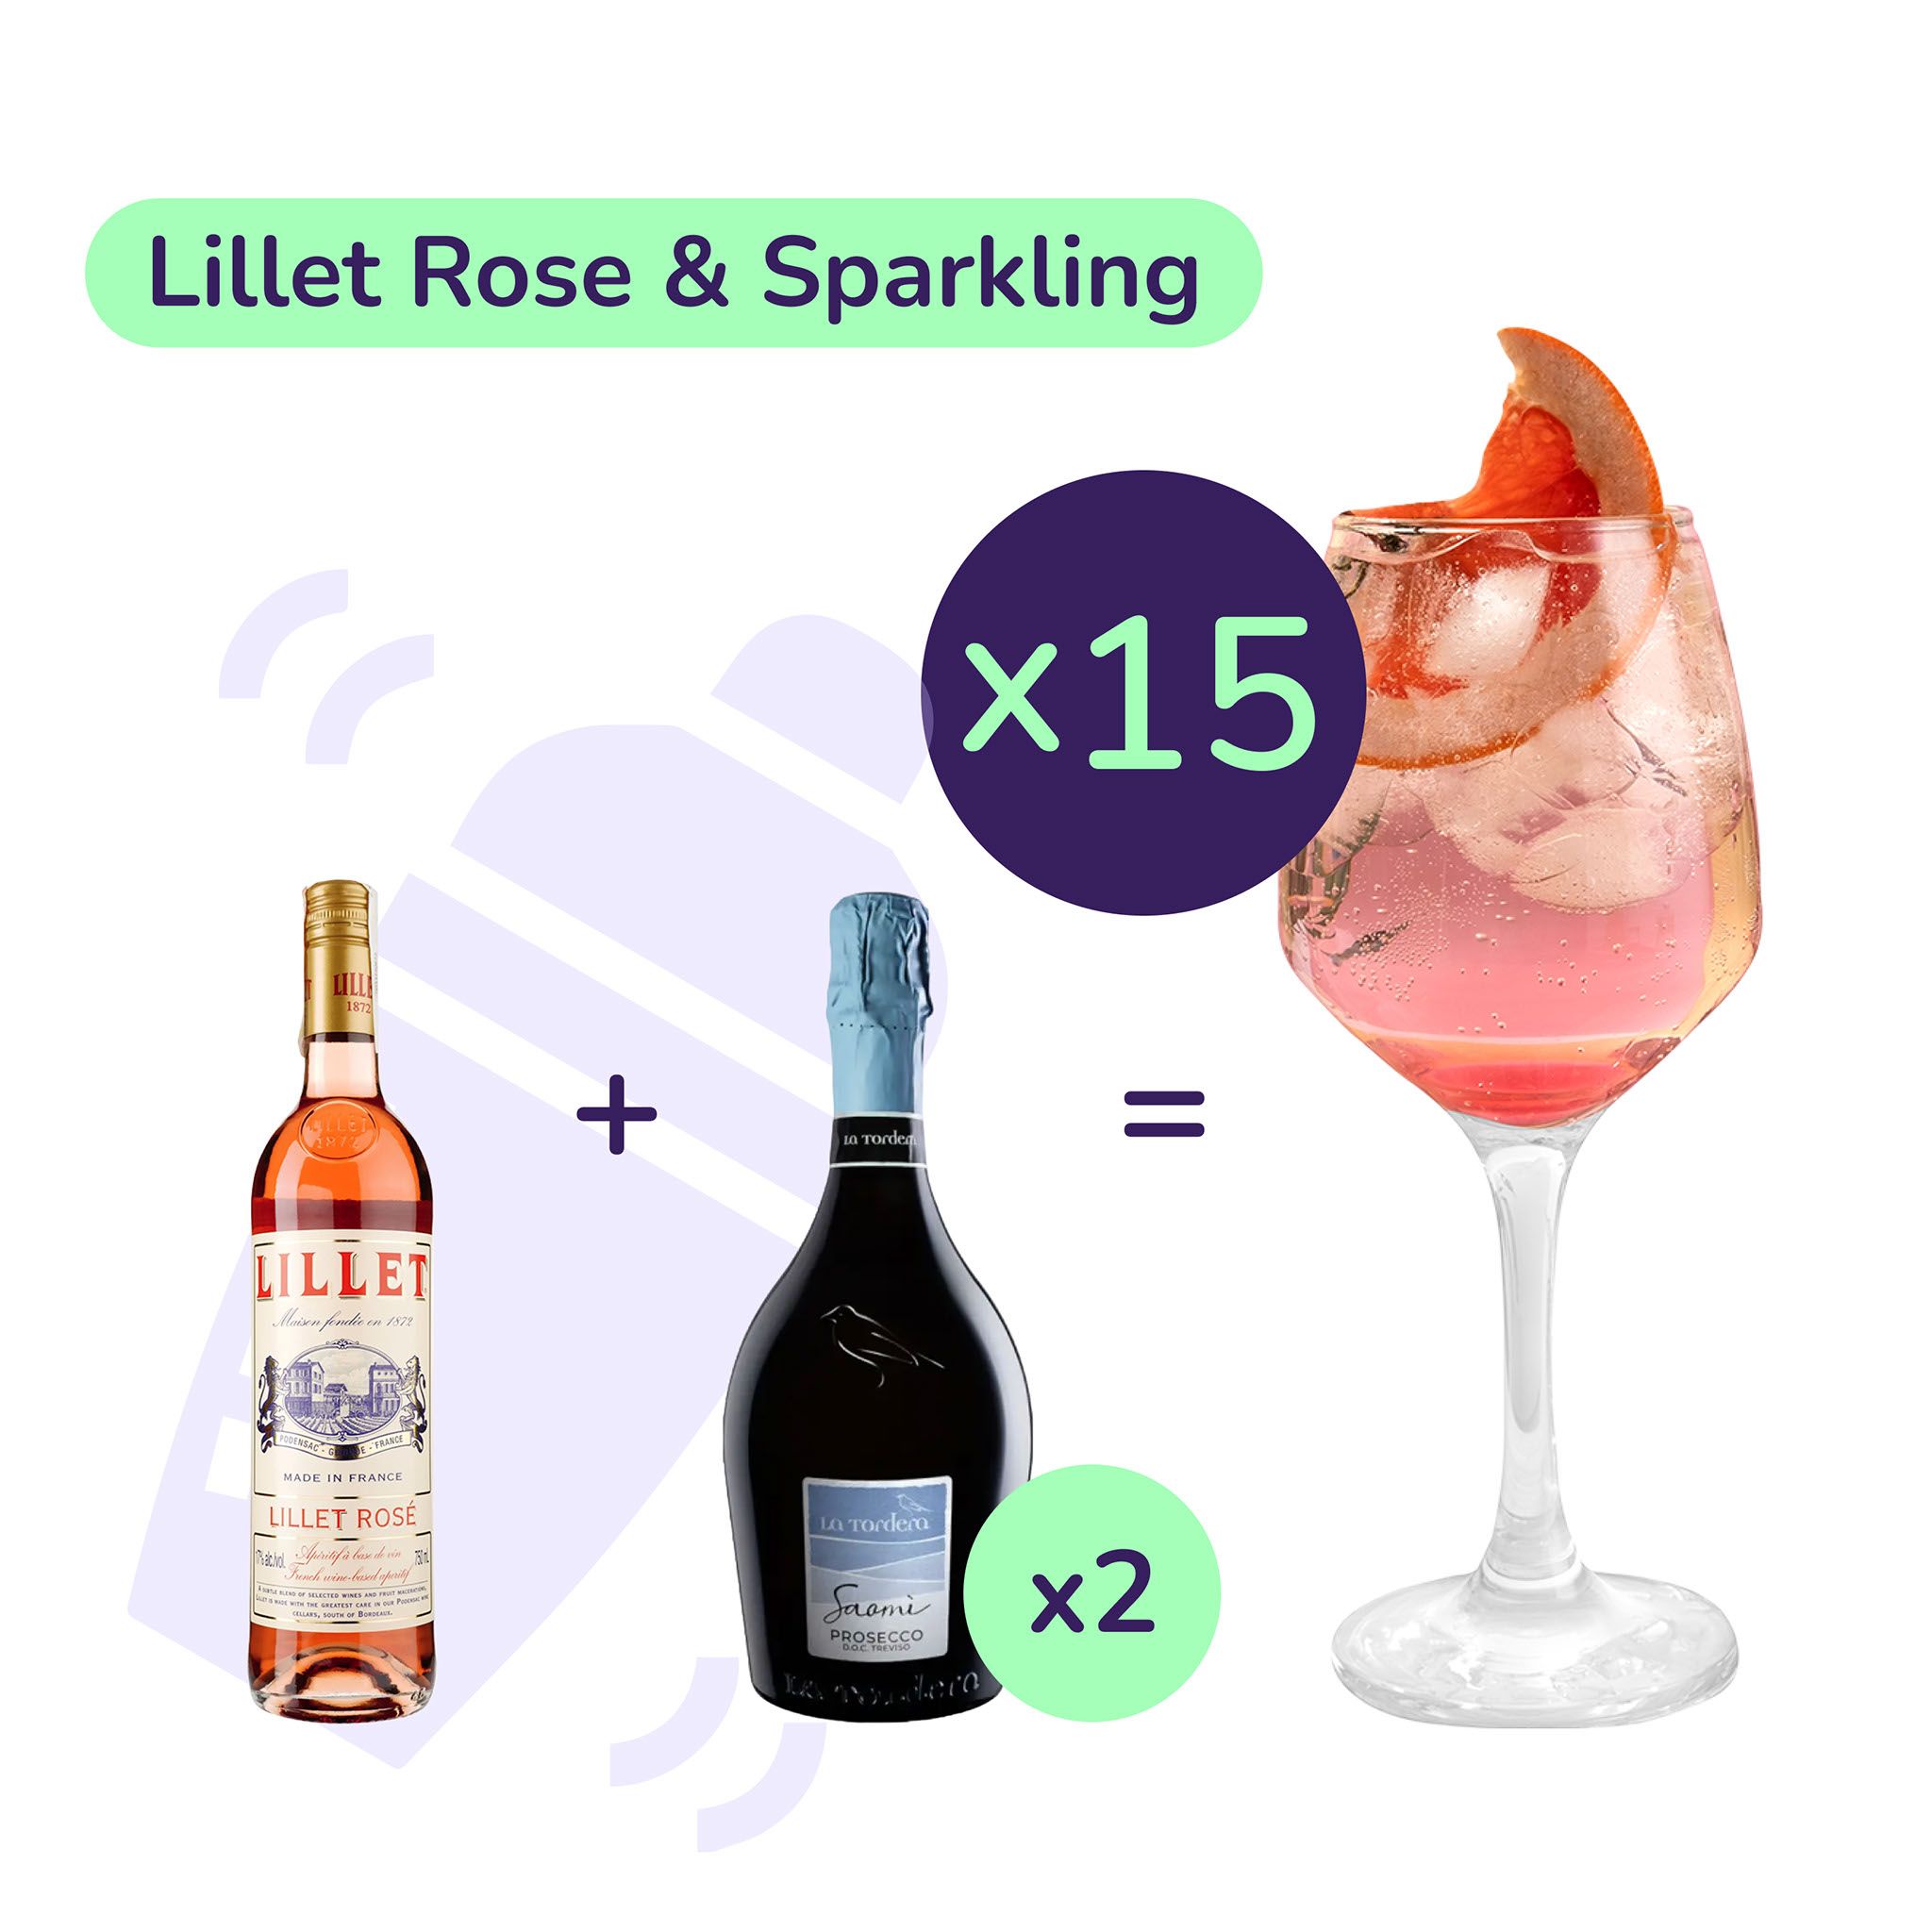 Коктейль Lillet Rose & Sparkling (набор ингредиентов) х15 на основе Lillet - фото 1